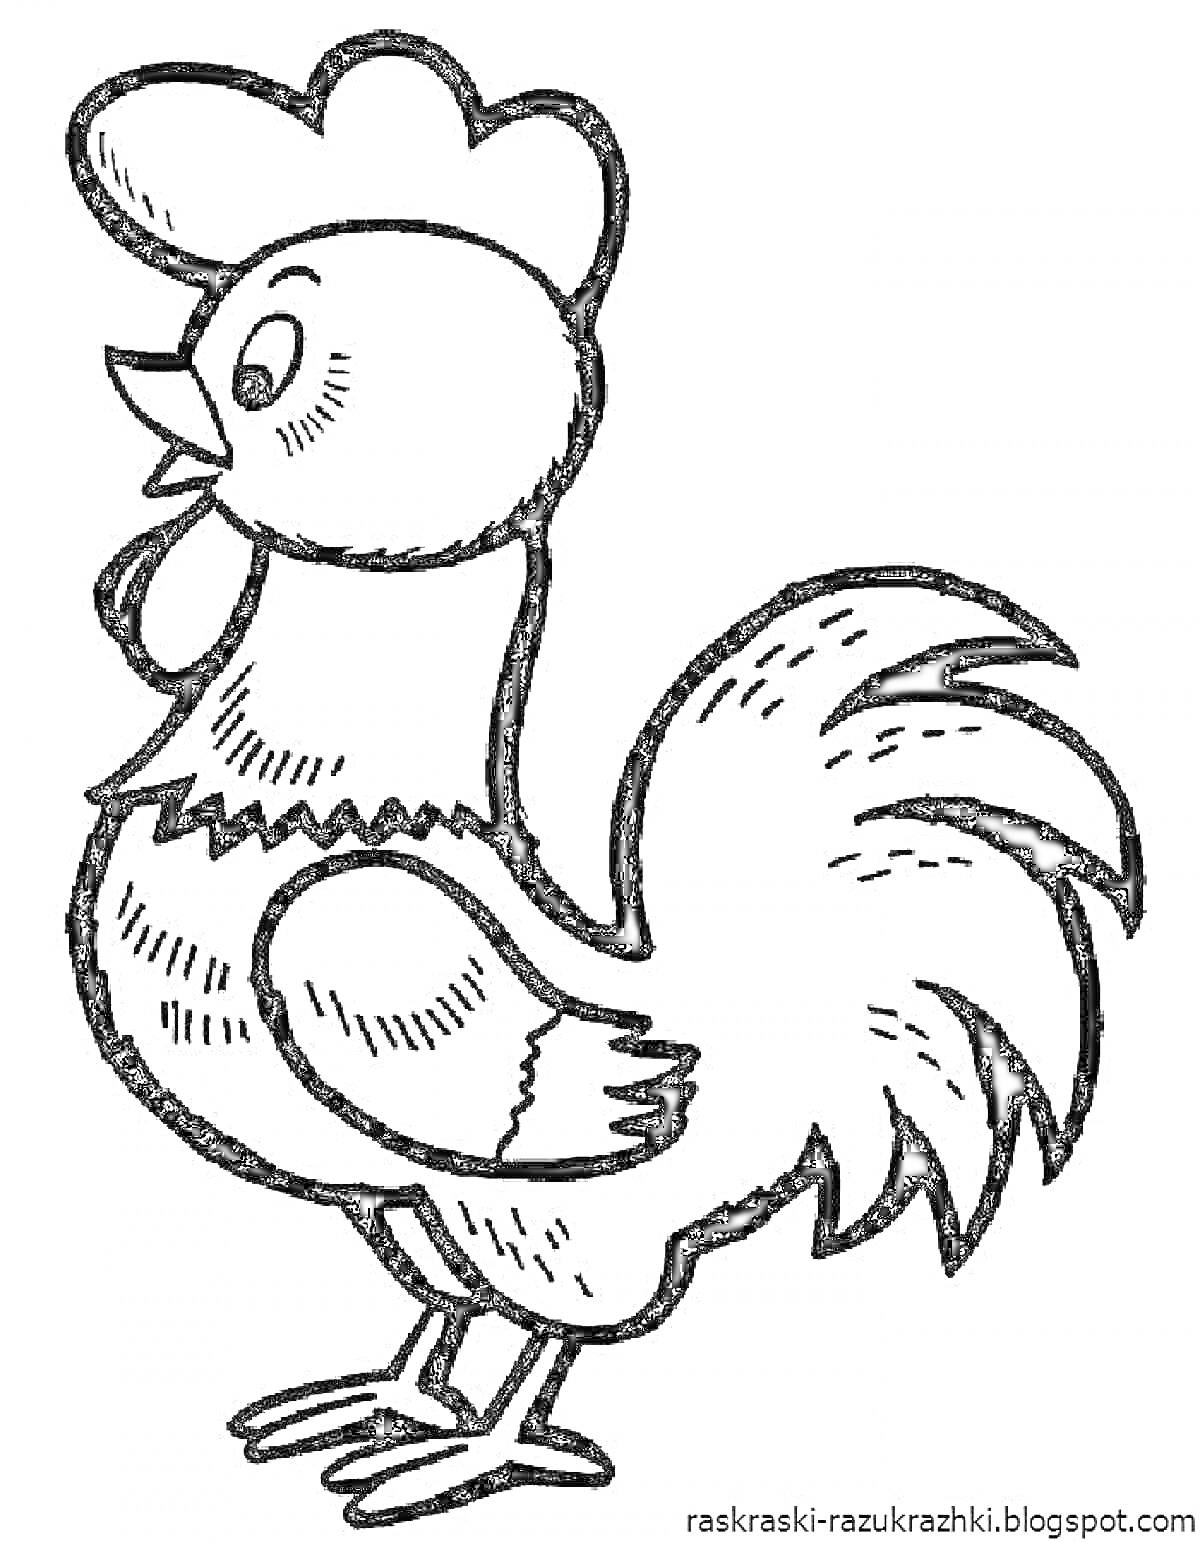 Раскраска Раскраска - Петух с массивным хвостом, гребешком и бородкой, стоящий и смотрящий вправо